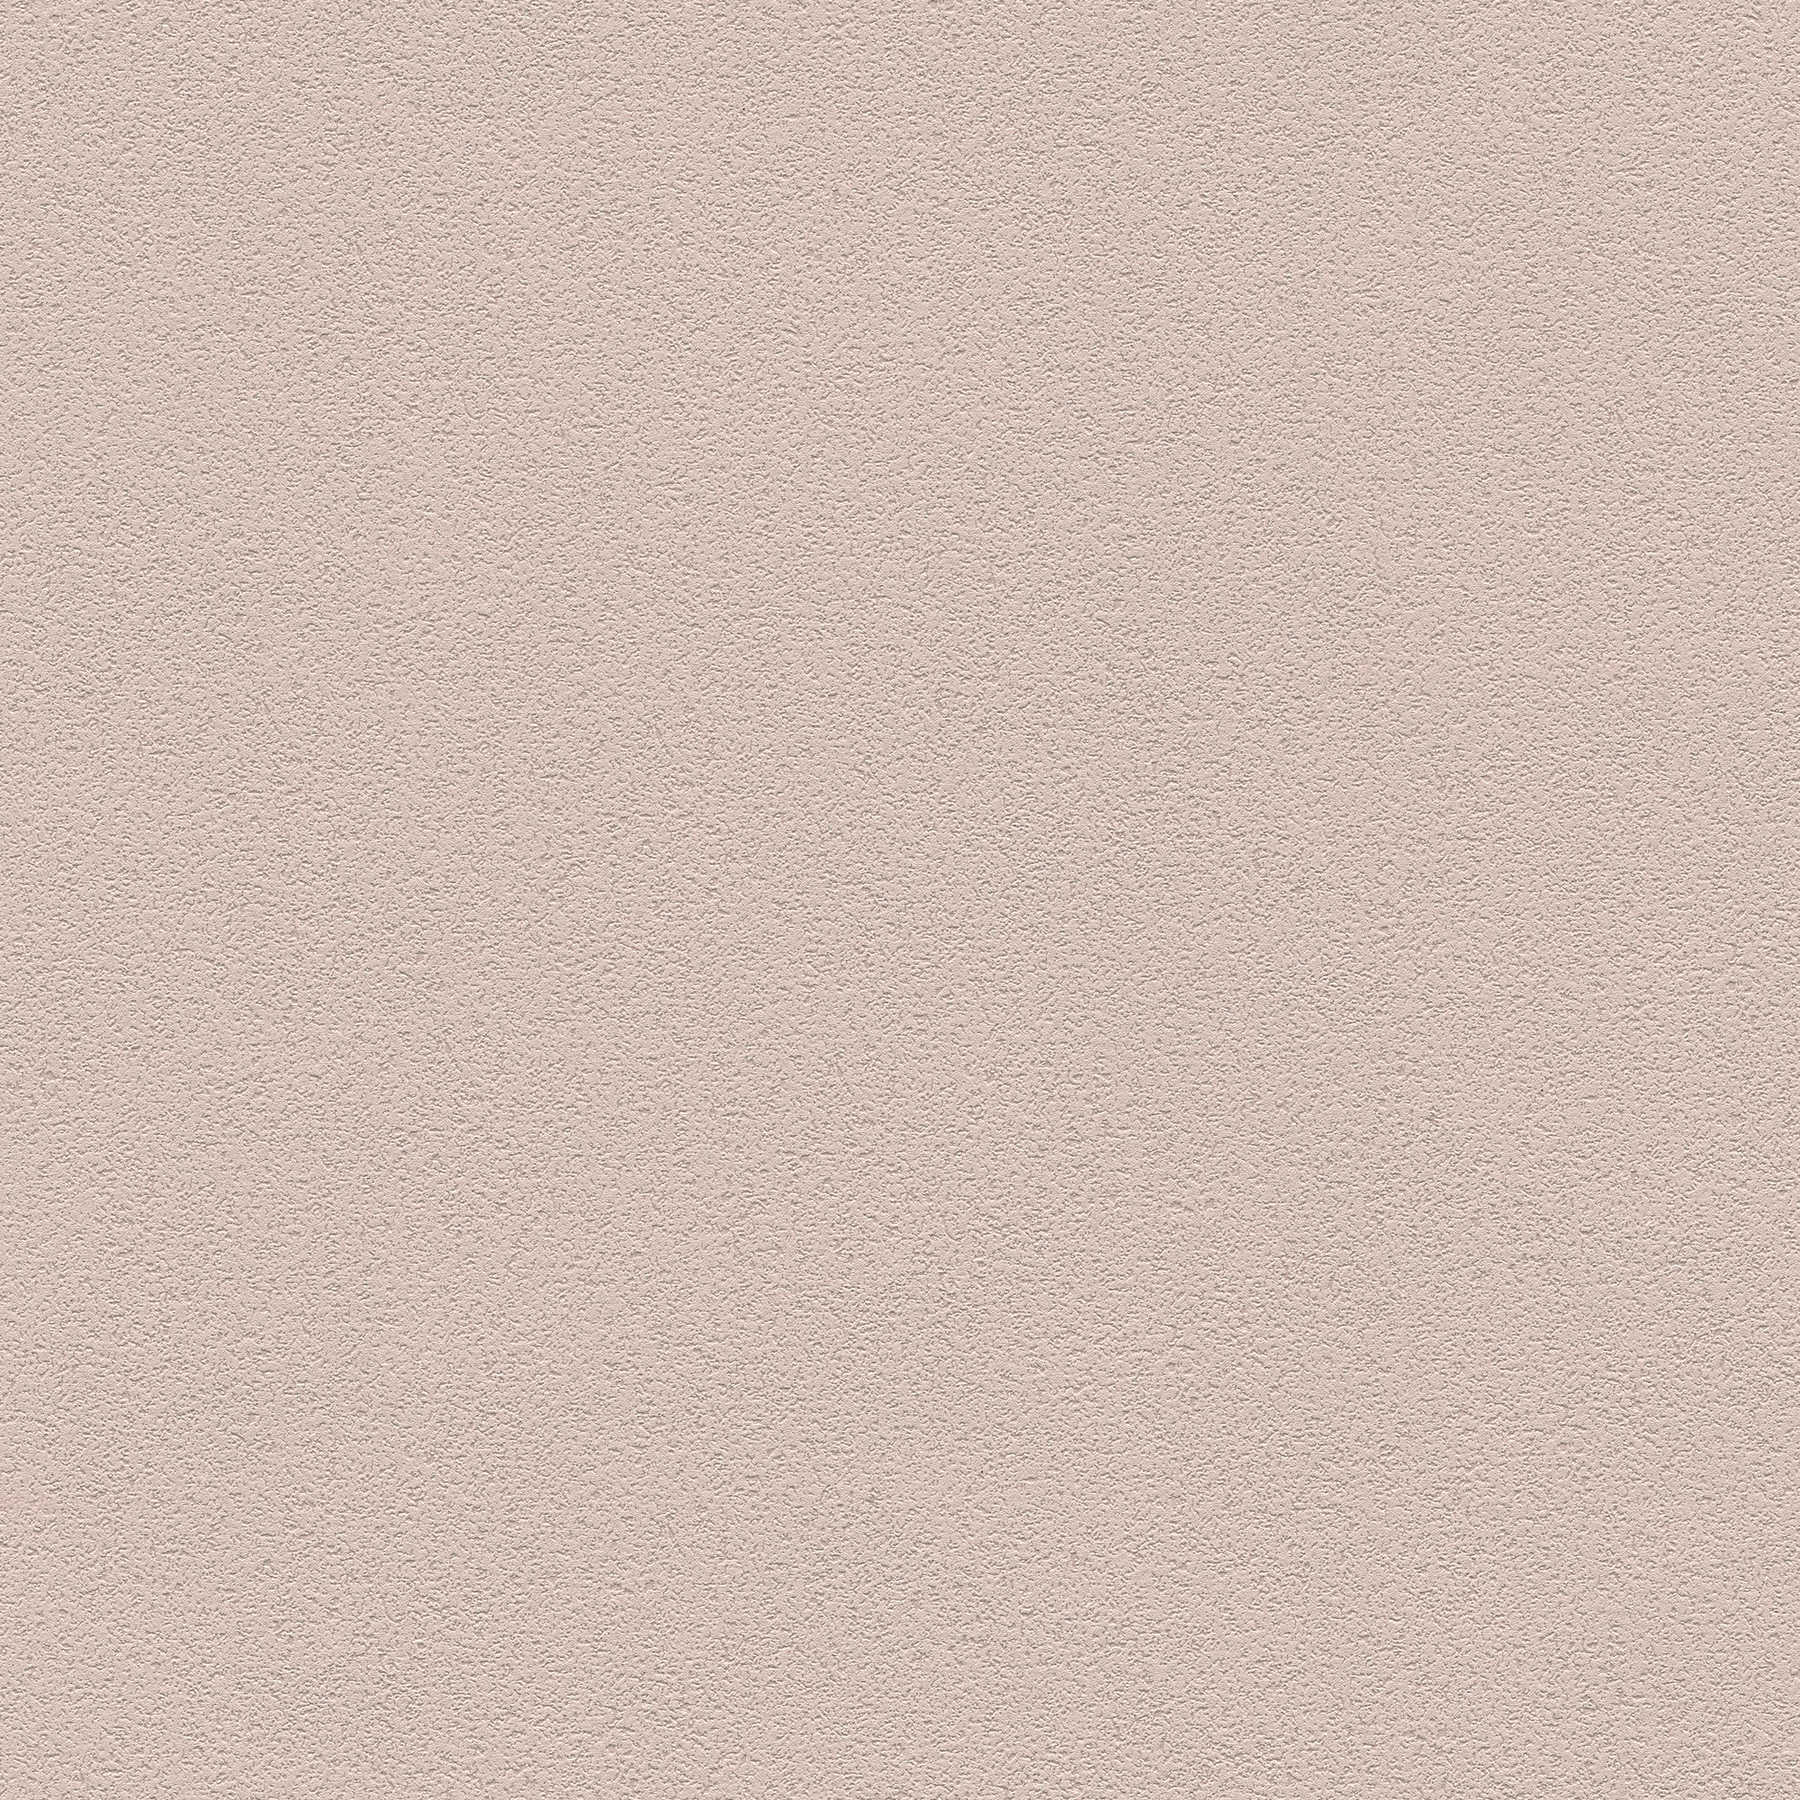 Papier peint uni avec structure de surface fine - marron
